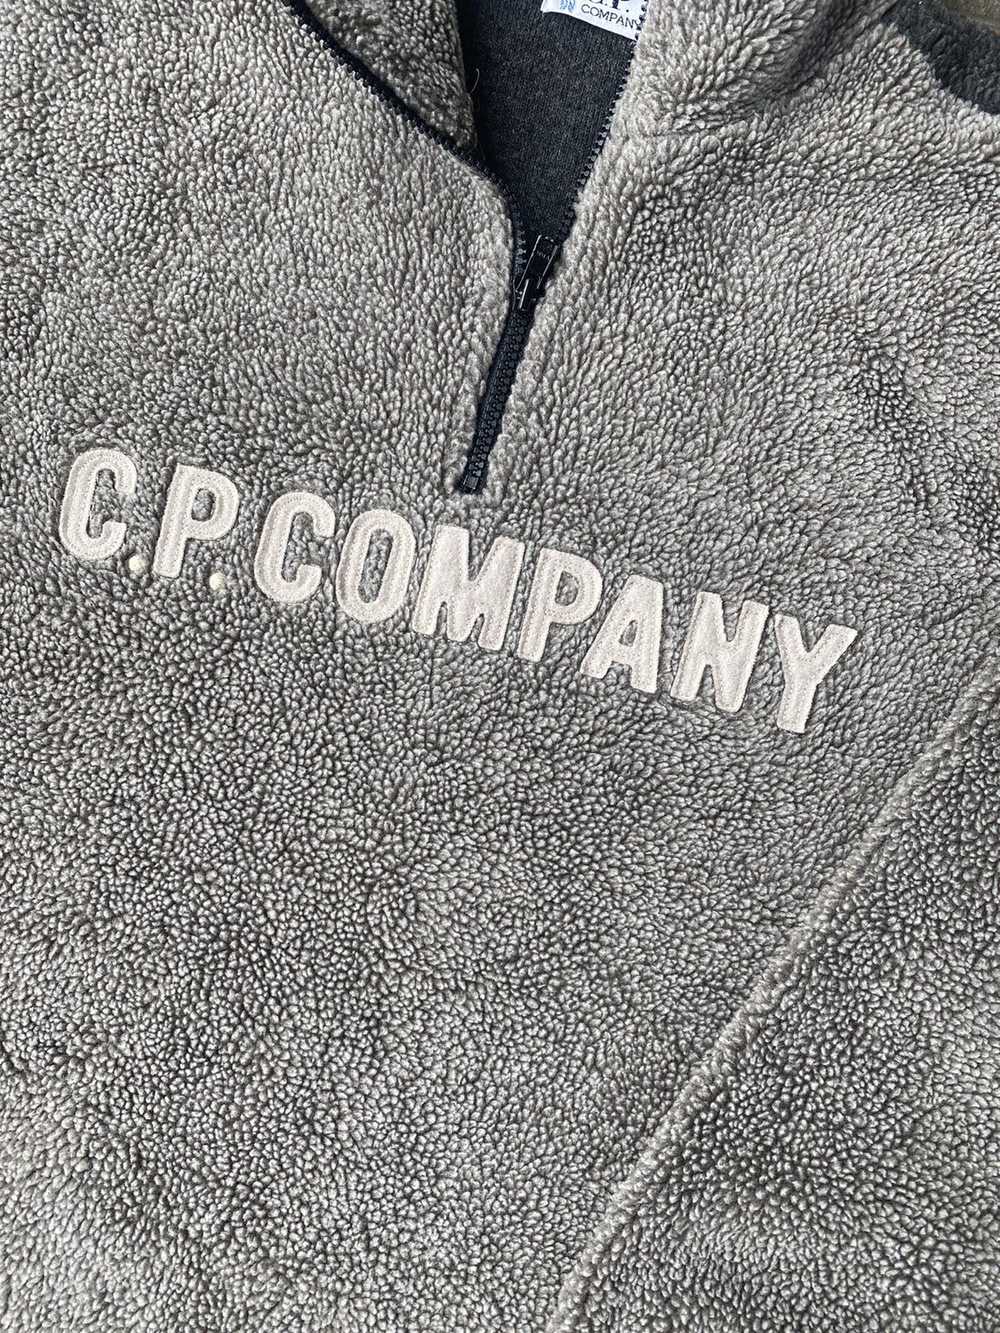 C.P. Company VINTAGE CP COMPANY FLEECE - image 4